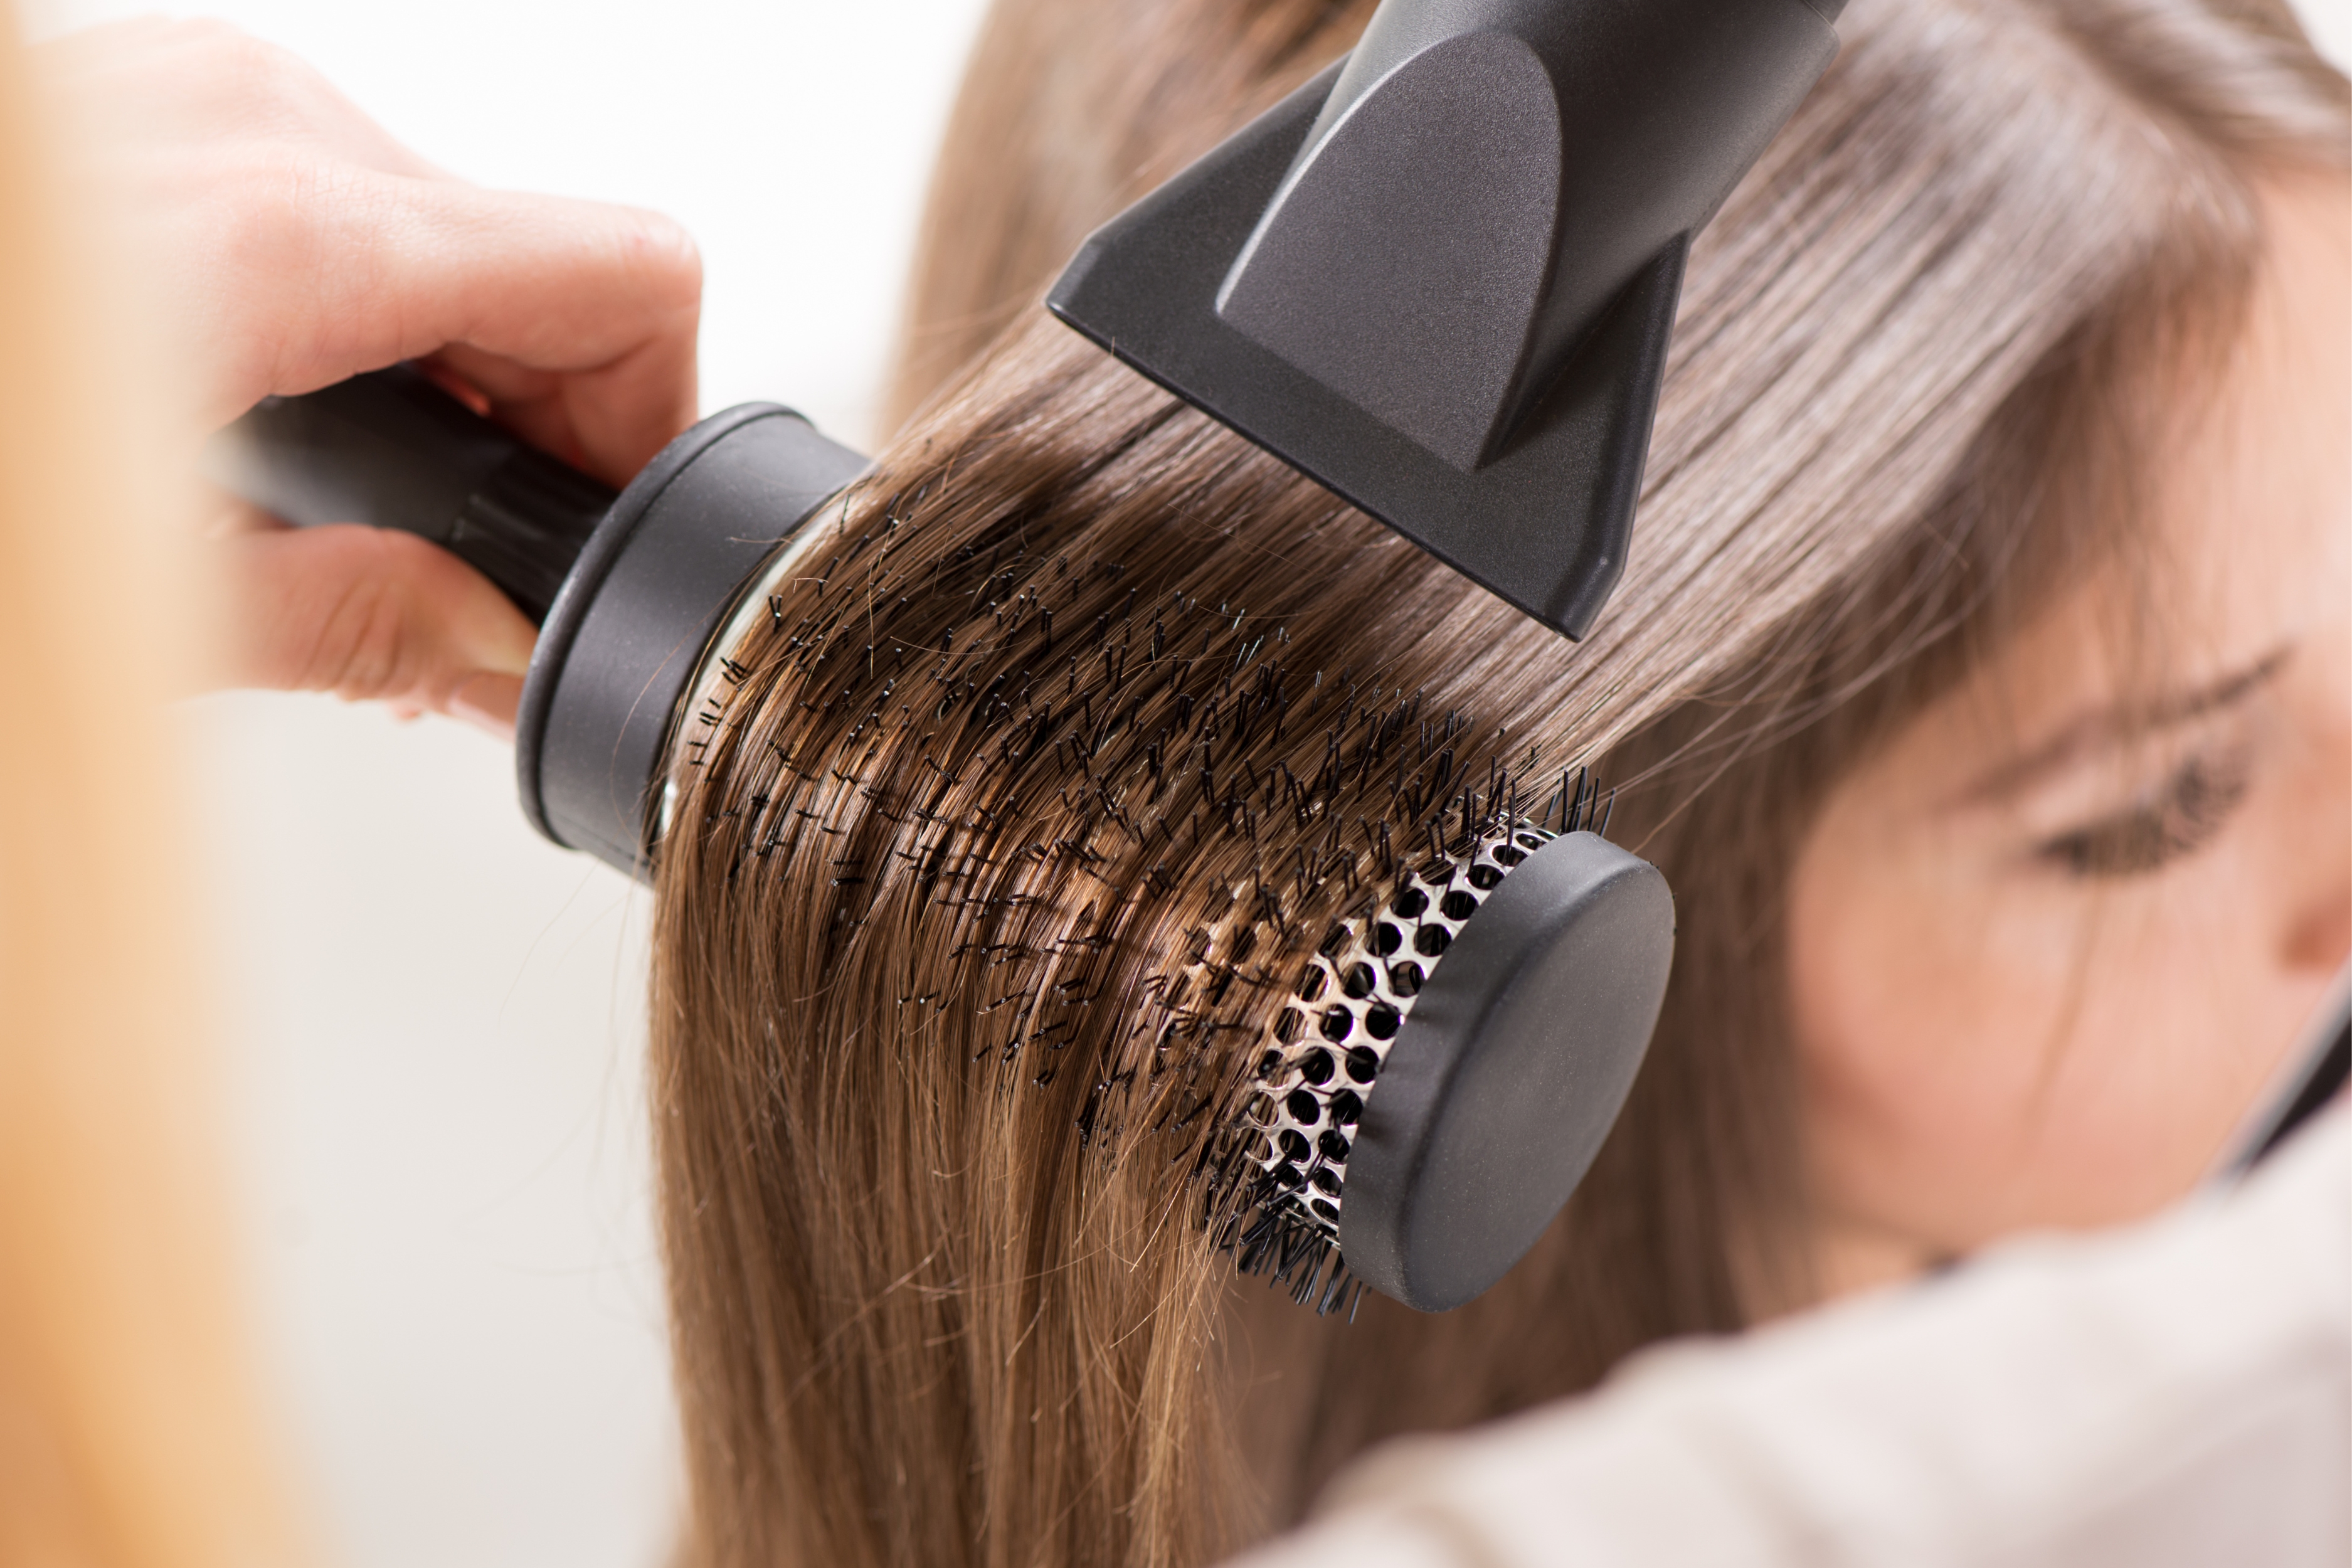 Αφήνεις τα μαλλιά σου να στεγνώσουν φυσικά ή χρησιμοποιείς πιστολάκι; Δες ποια μέθοδος είναι καλύτερη